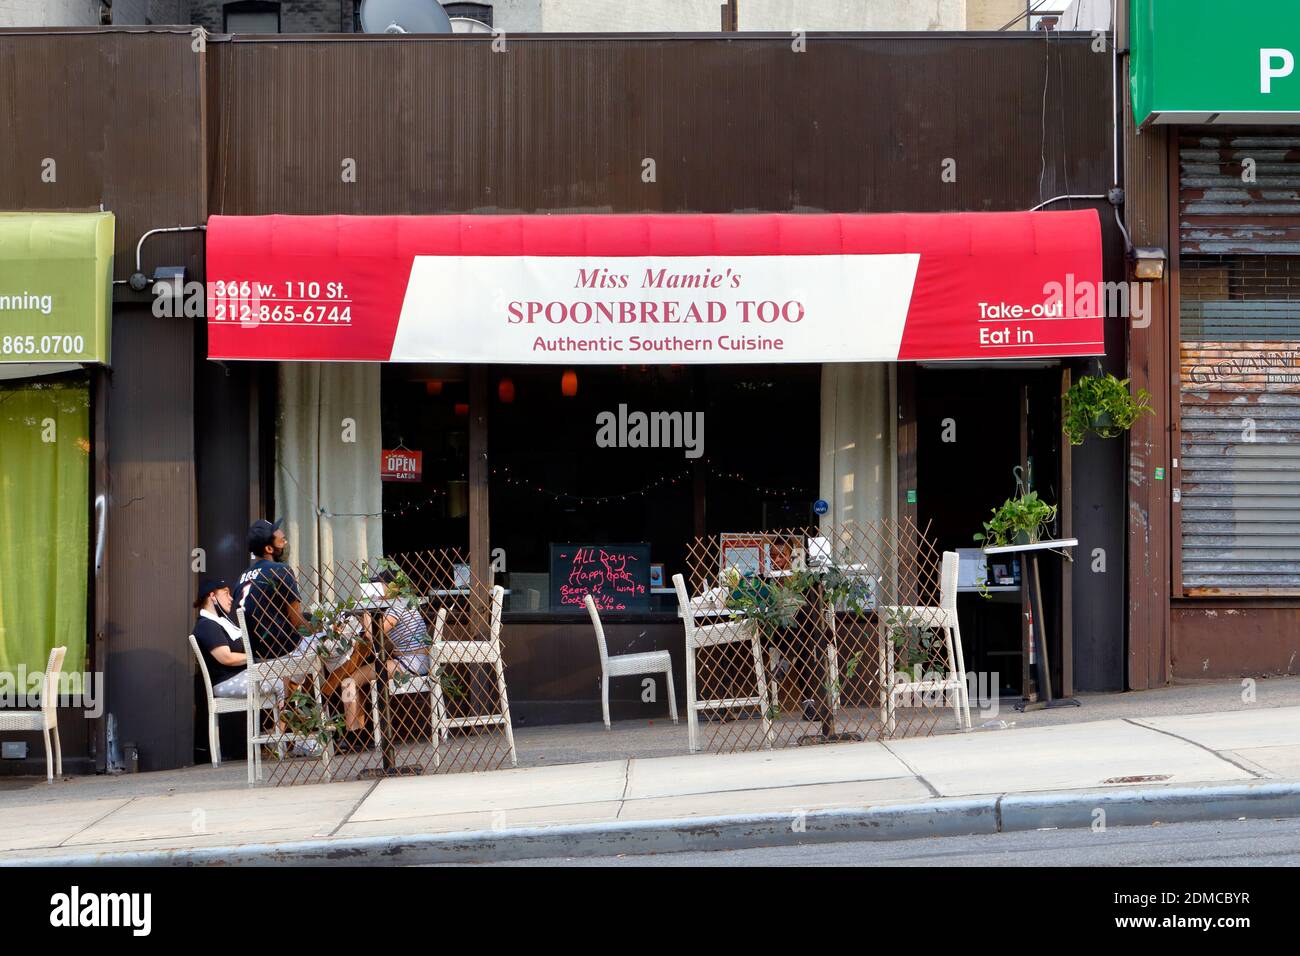 Miss Mamie's Spoonbread Too, 366 W 110. St, New York, NYC Schaufenster Foto eines Southern Food Restaurants in der Manhattan Valley Nachbarschaft. Stockfoto